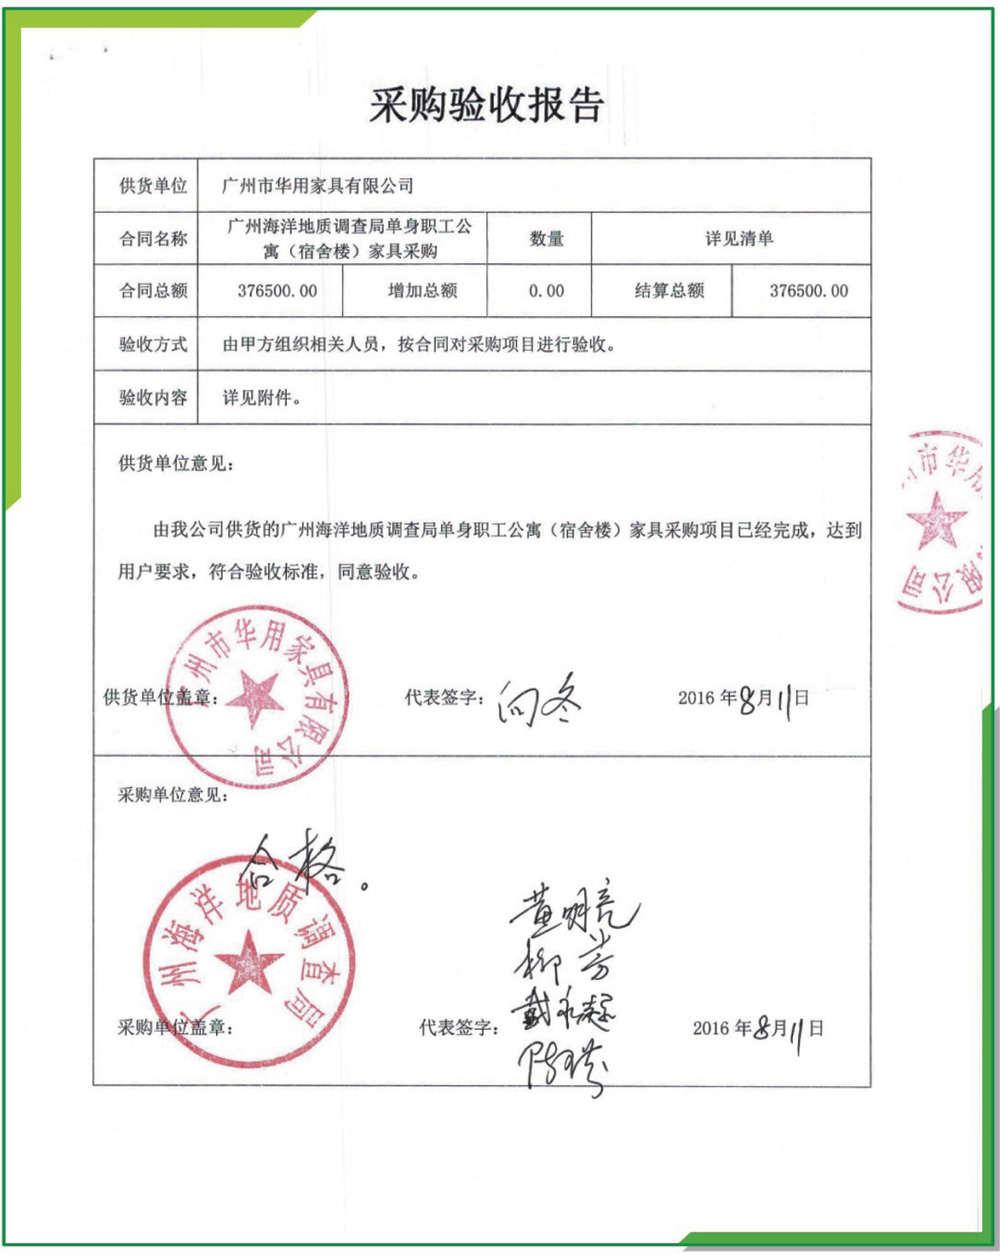 广州海洋地质调查局单身职工公寓家具采购验收报告/